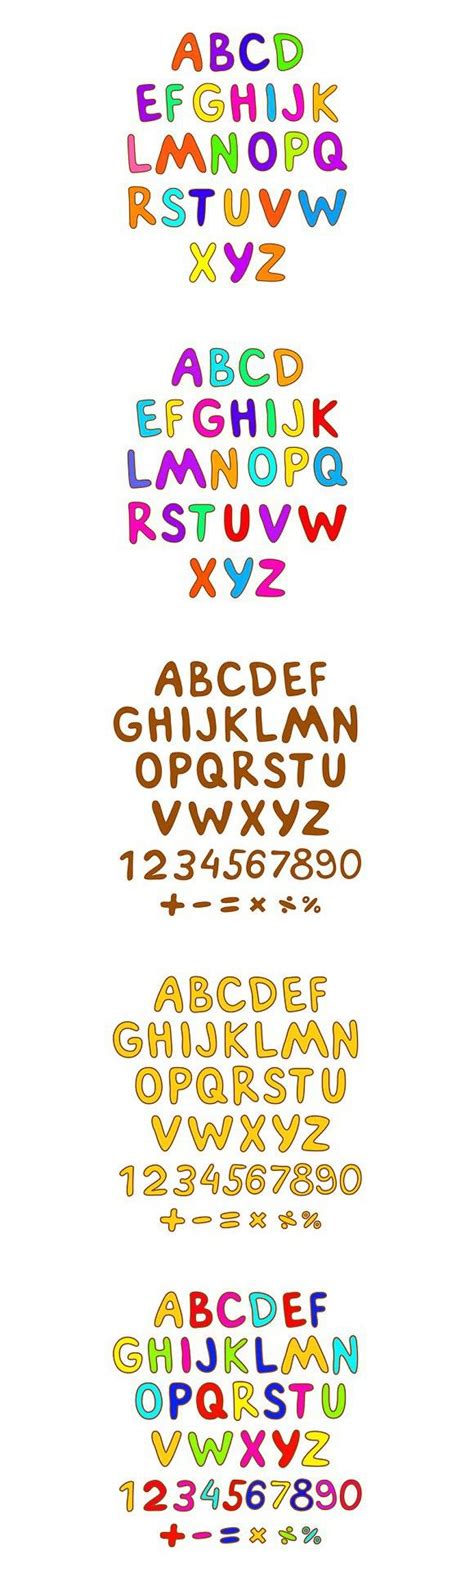 Alphabet Font Color For Children Abc Fonts Alphabet Coloring For